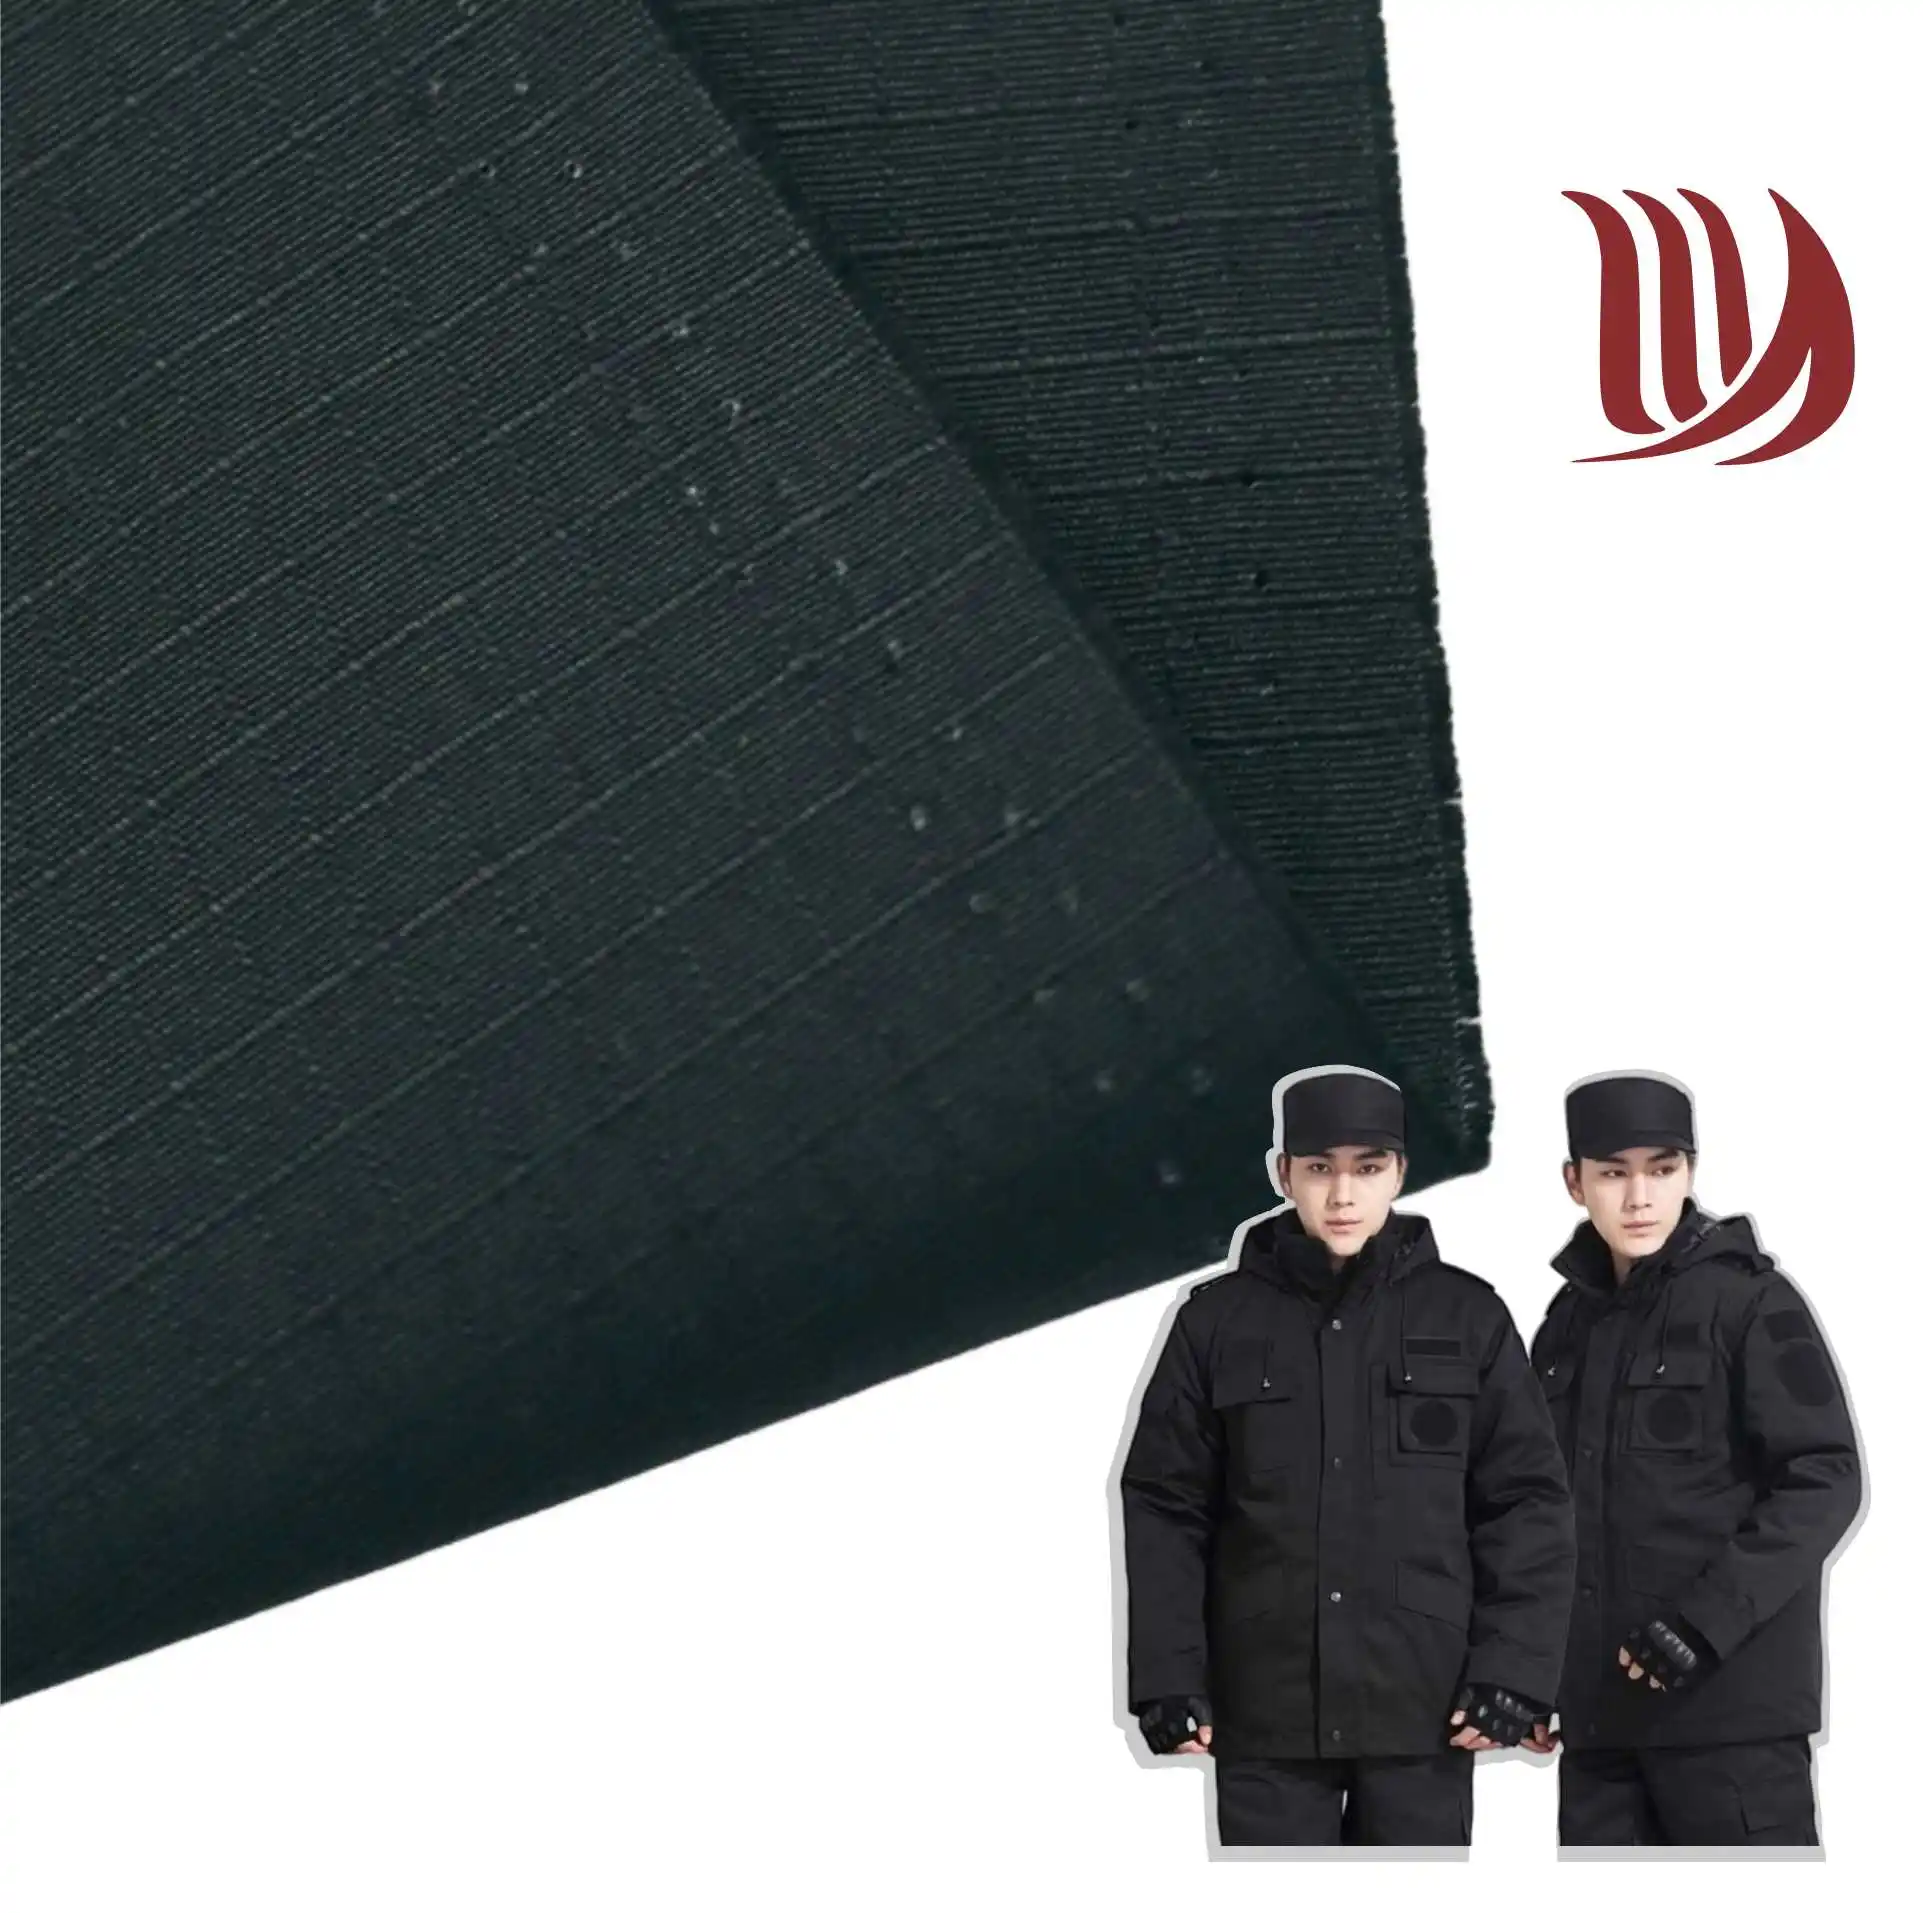 Sarga tejida de polialgodón 21*16 tela negra para camisa ripstop para uniforme de seguridad tela de traje de trabajo